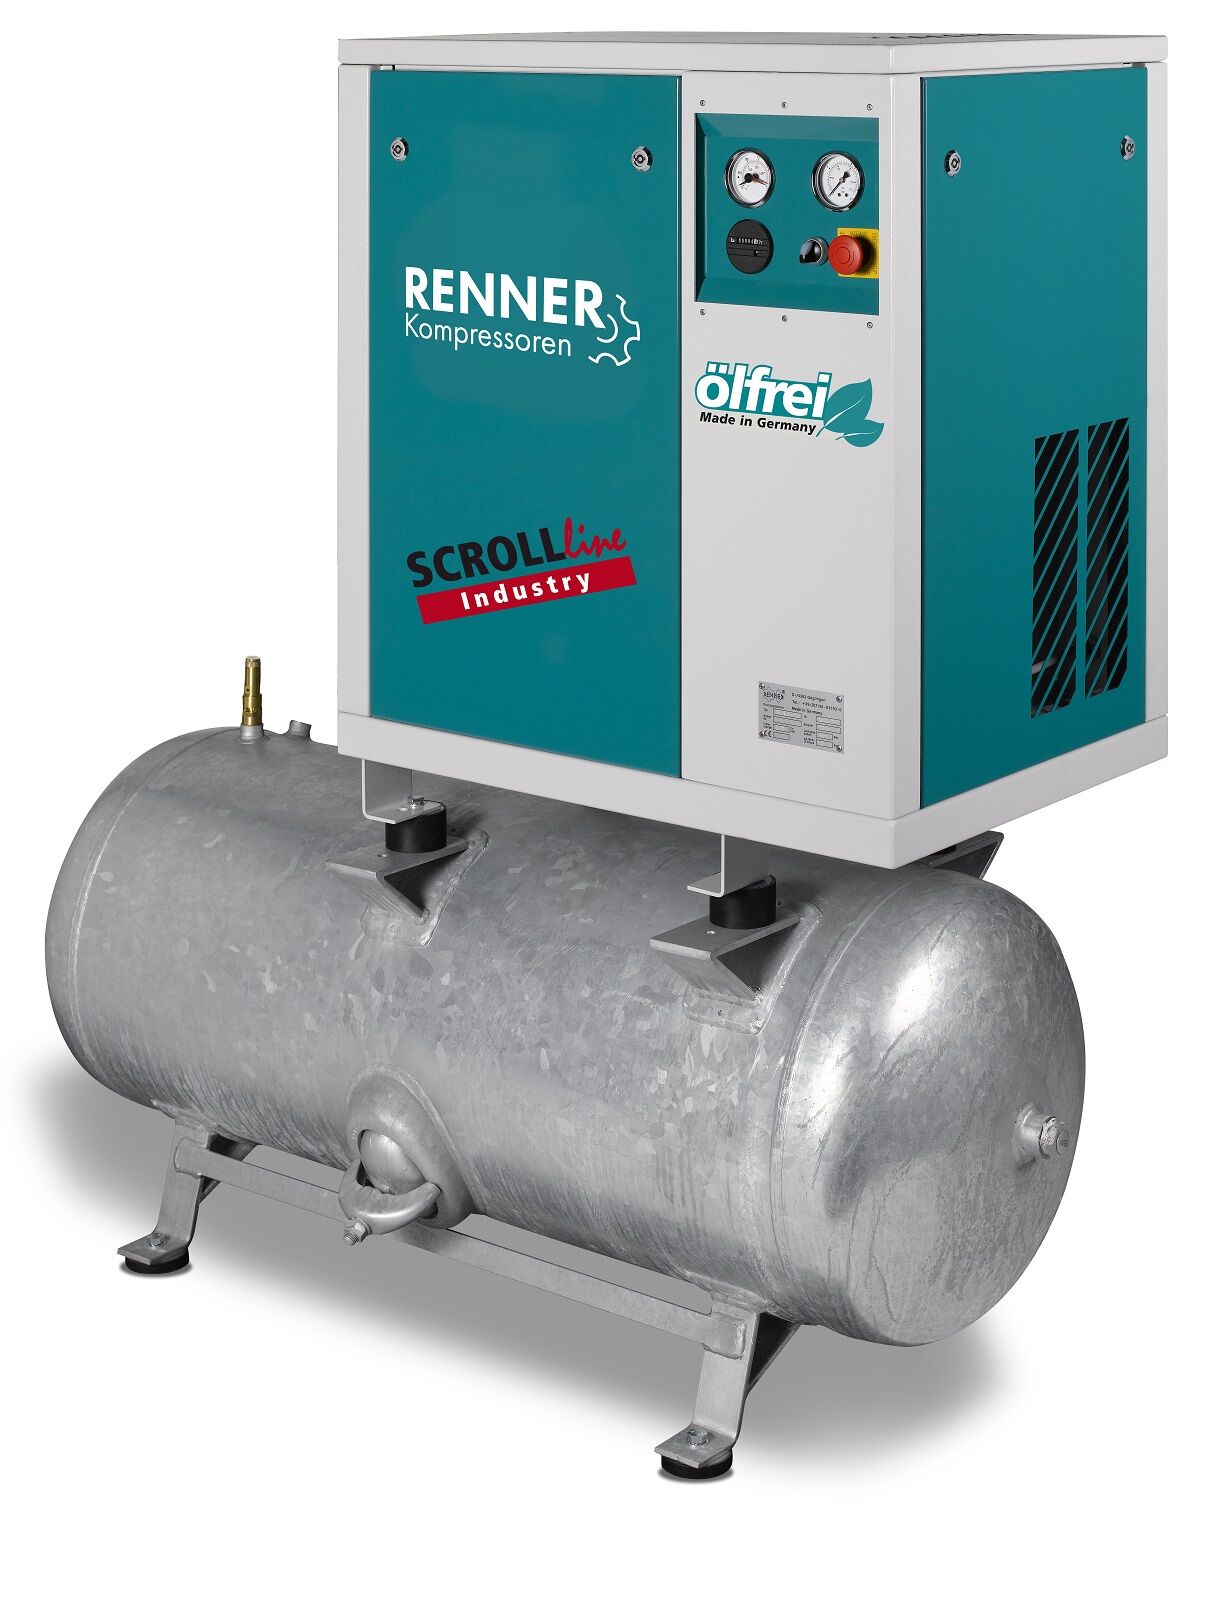 RENNER-Kompressor SLD-I 3,7 auf 250 Liter Druckbehälter - Industry ölfreier Scrollkompressor